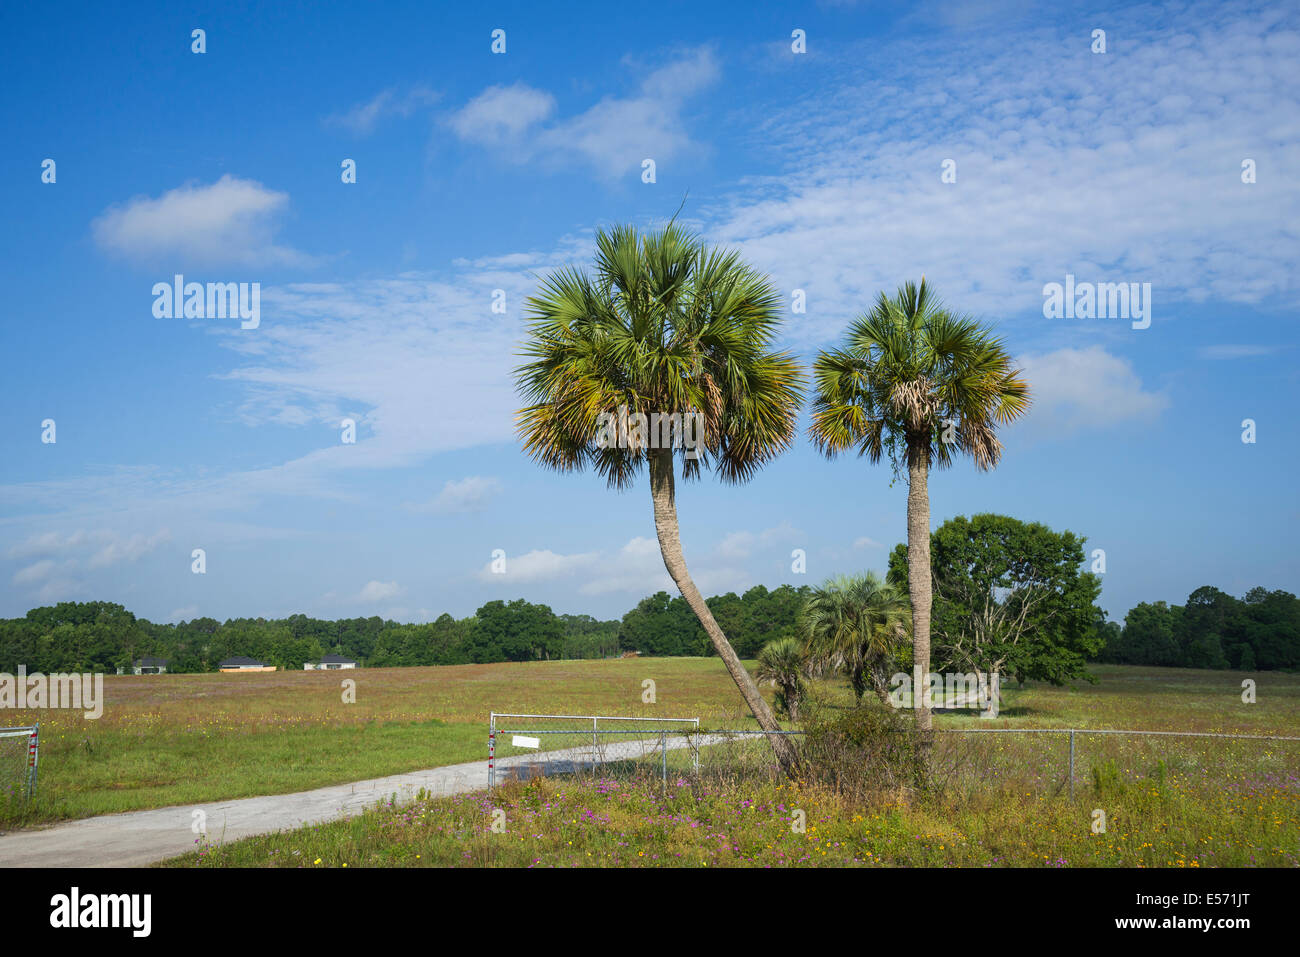 Deux palmiers Sabal solitaire à l'entrée d'un chemin de terre en milieu rural dans le Nord de la Floride. Banque D'Images